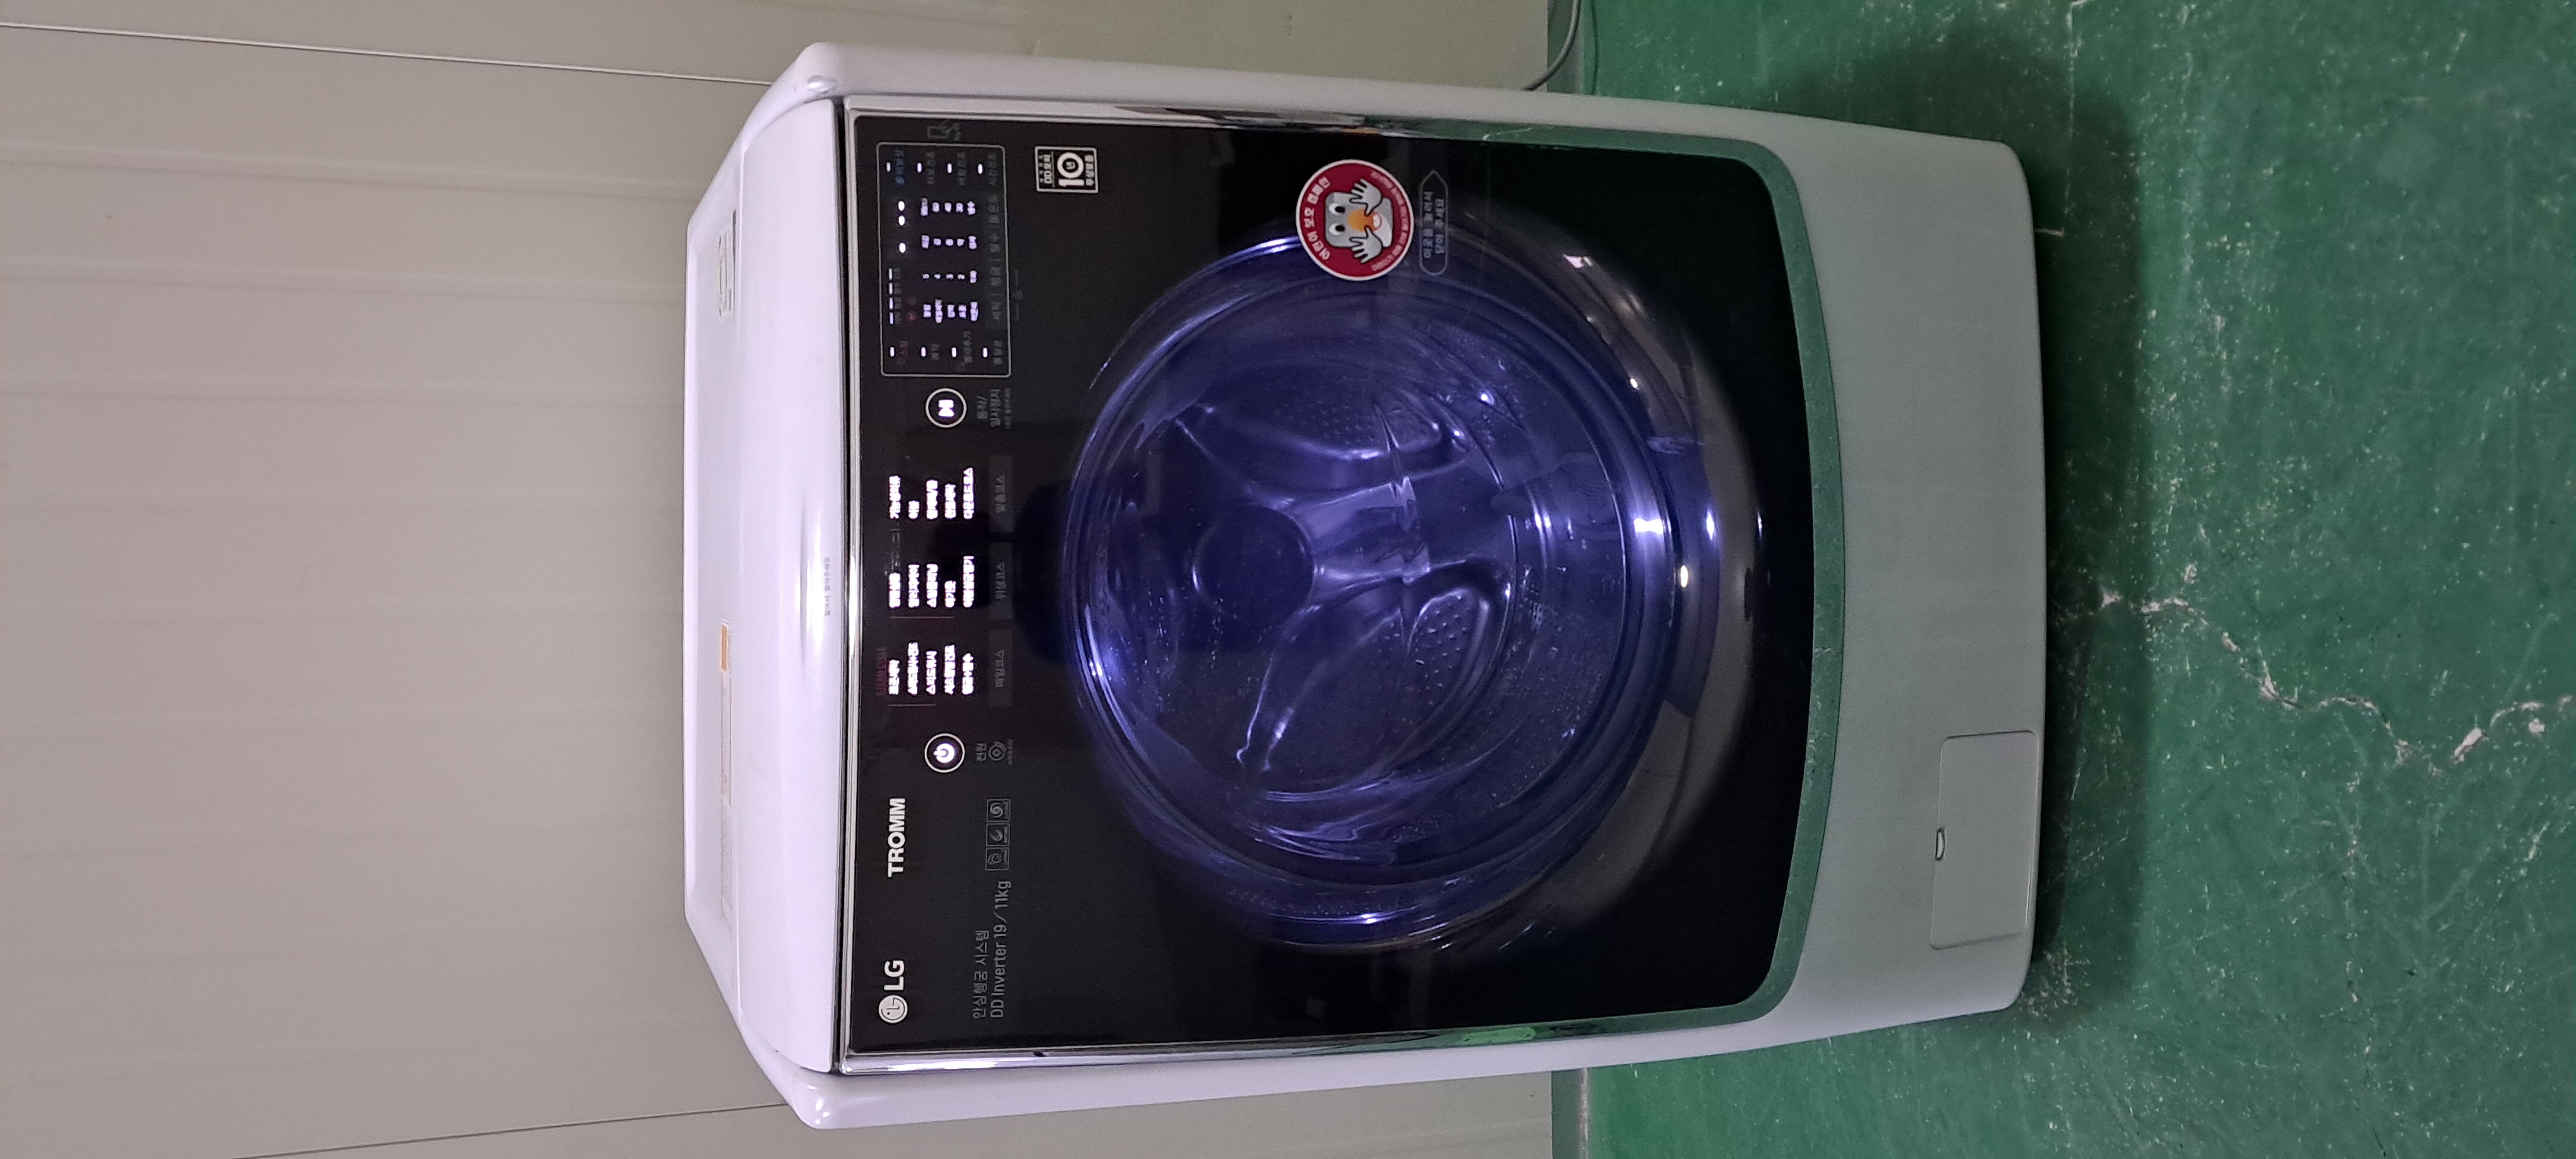 2544 엘지트롬 19KG 드럼세탁기(화이트+건조기능)